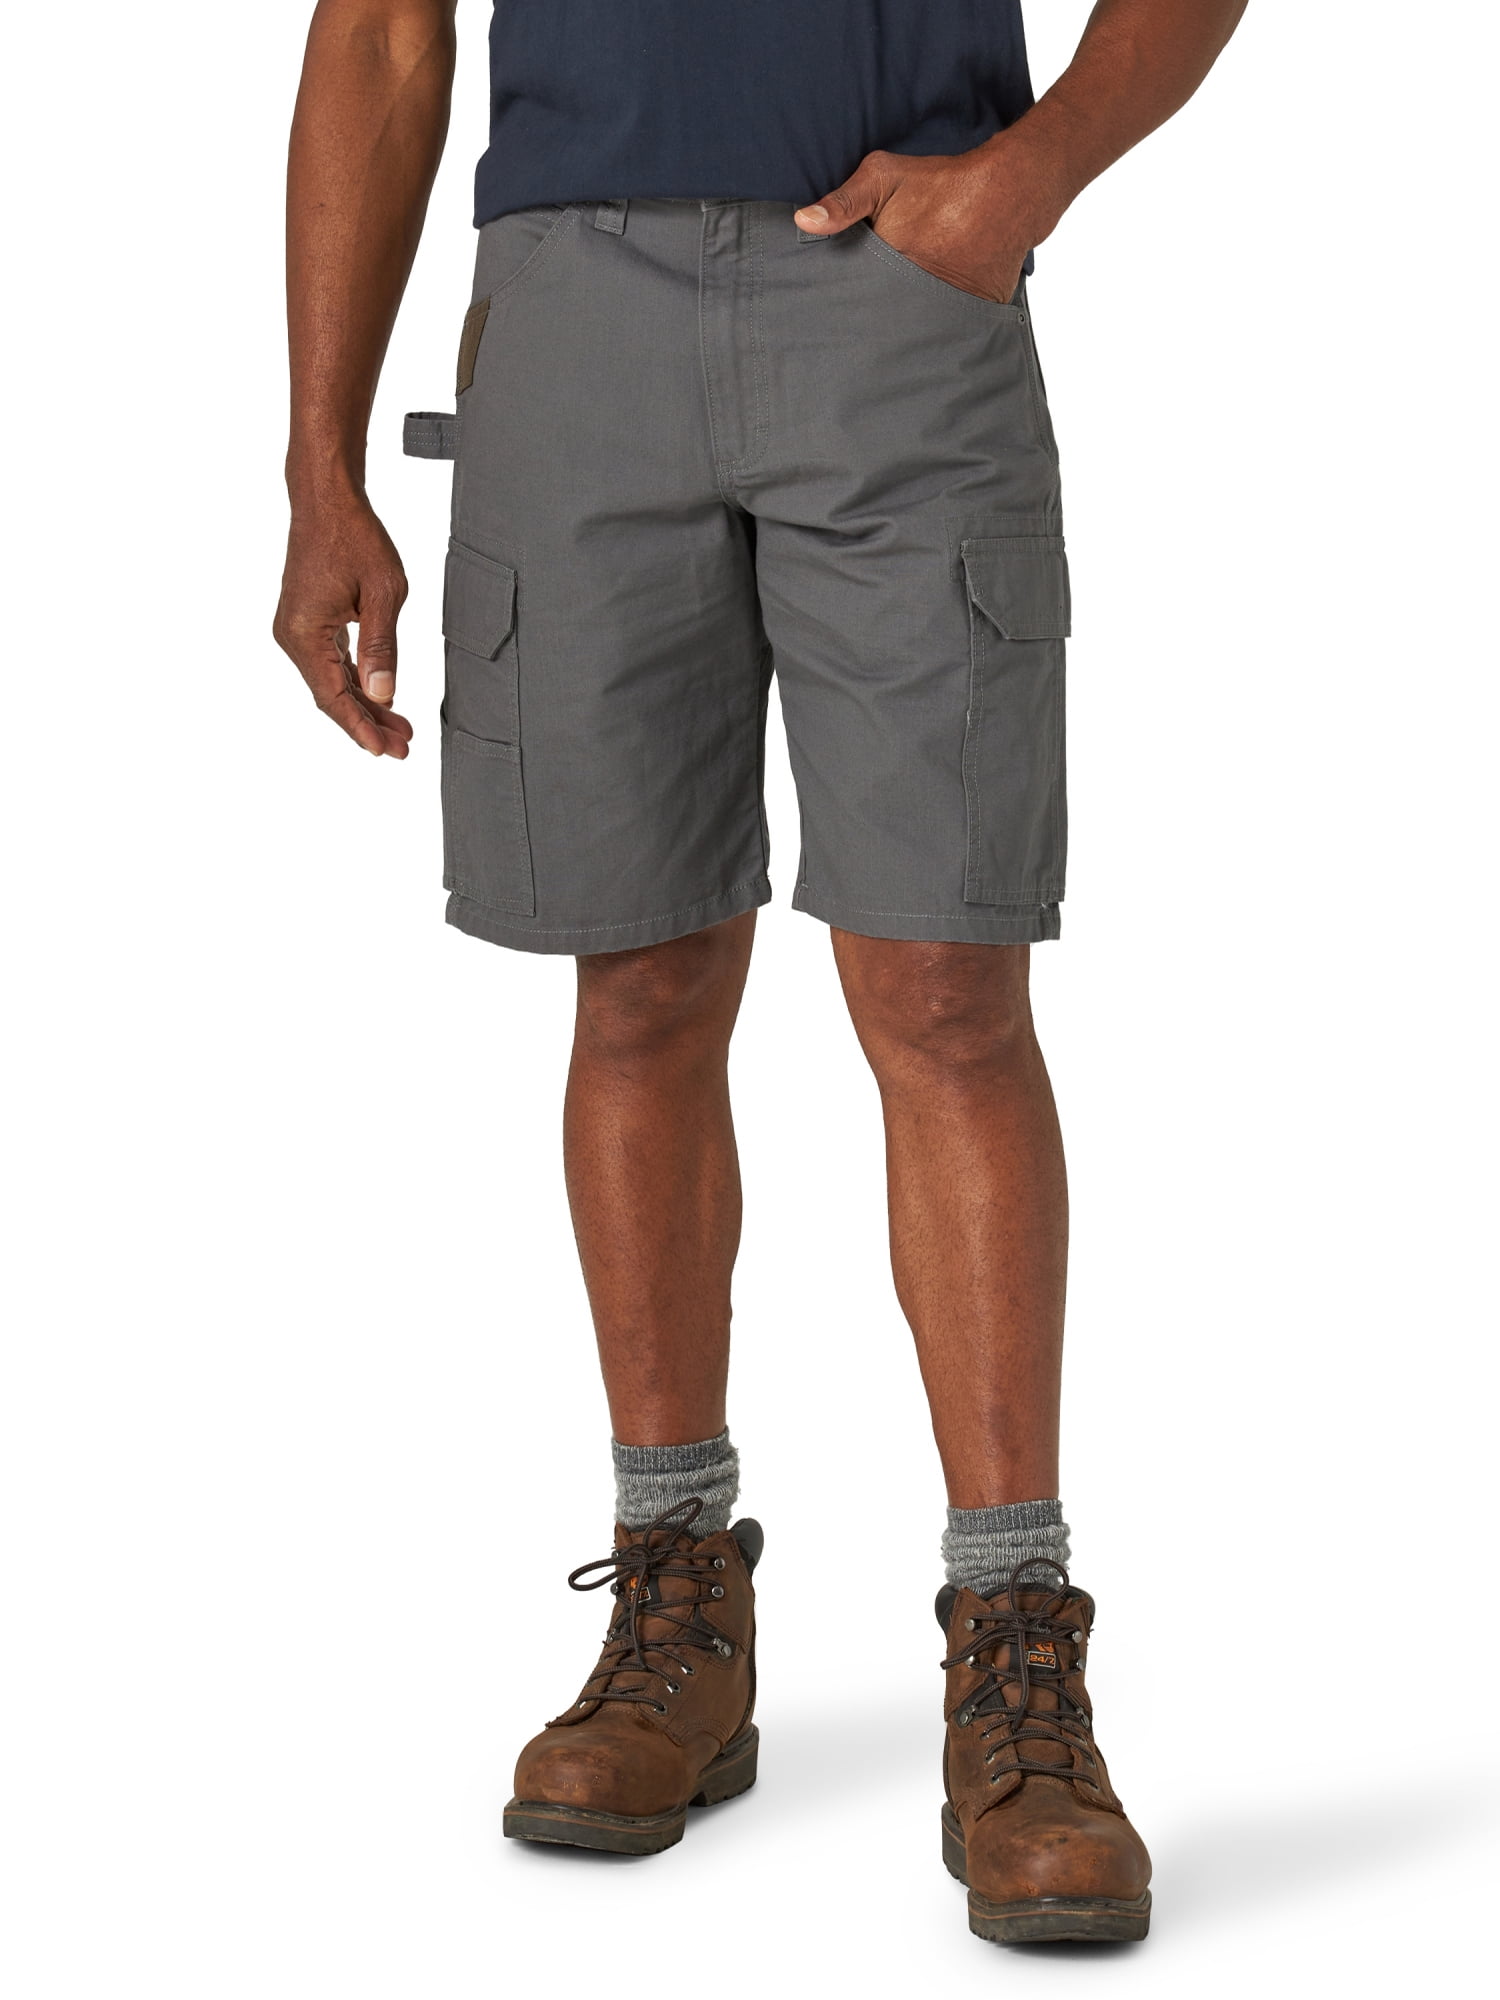 Men’s Wrangler Workwear Relaxed Fit Ranger Short, Sizes 32-44